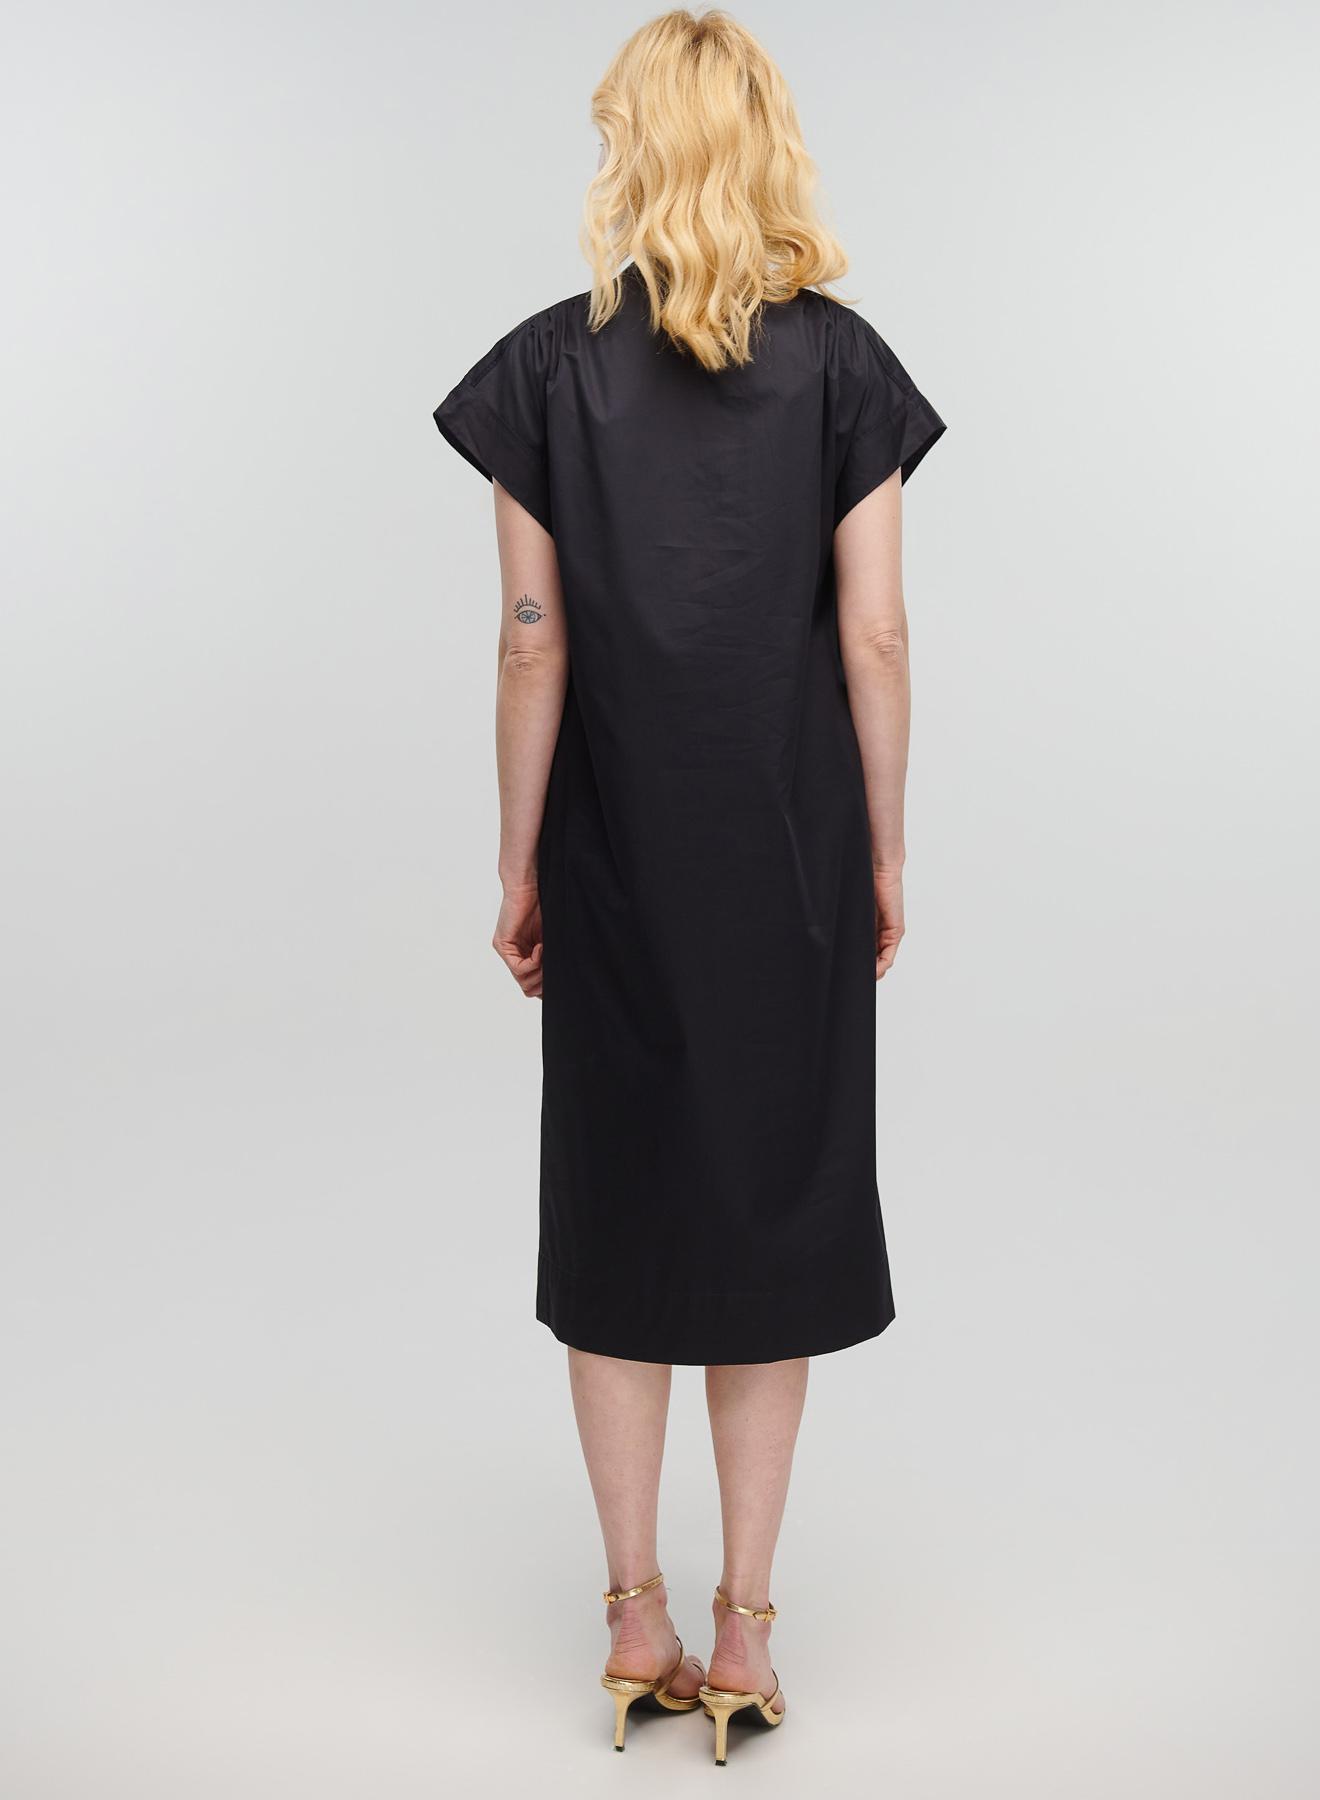 Μαύρο μακρύ Φόρεμα αμάνικο με V λαιμόκοψη, ζώνη και σχισμή μπροστά Milla - 5